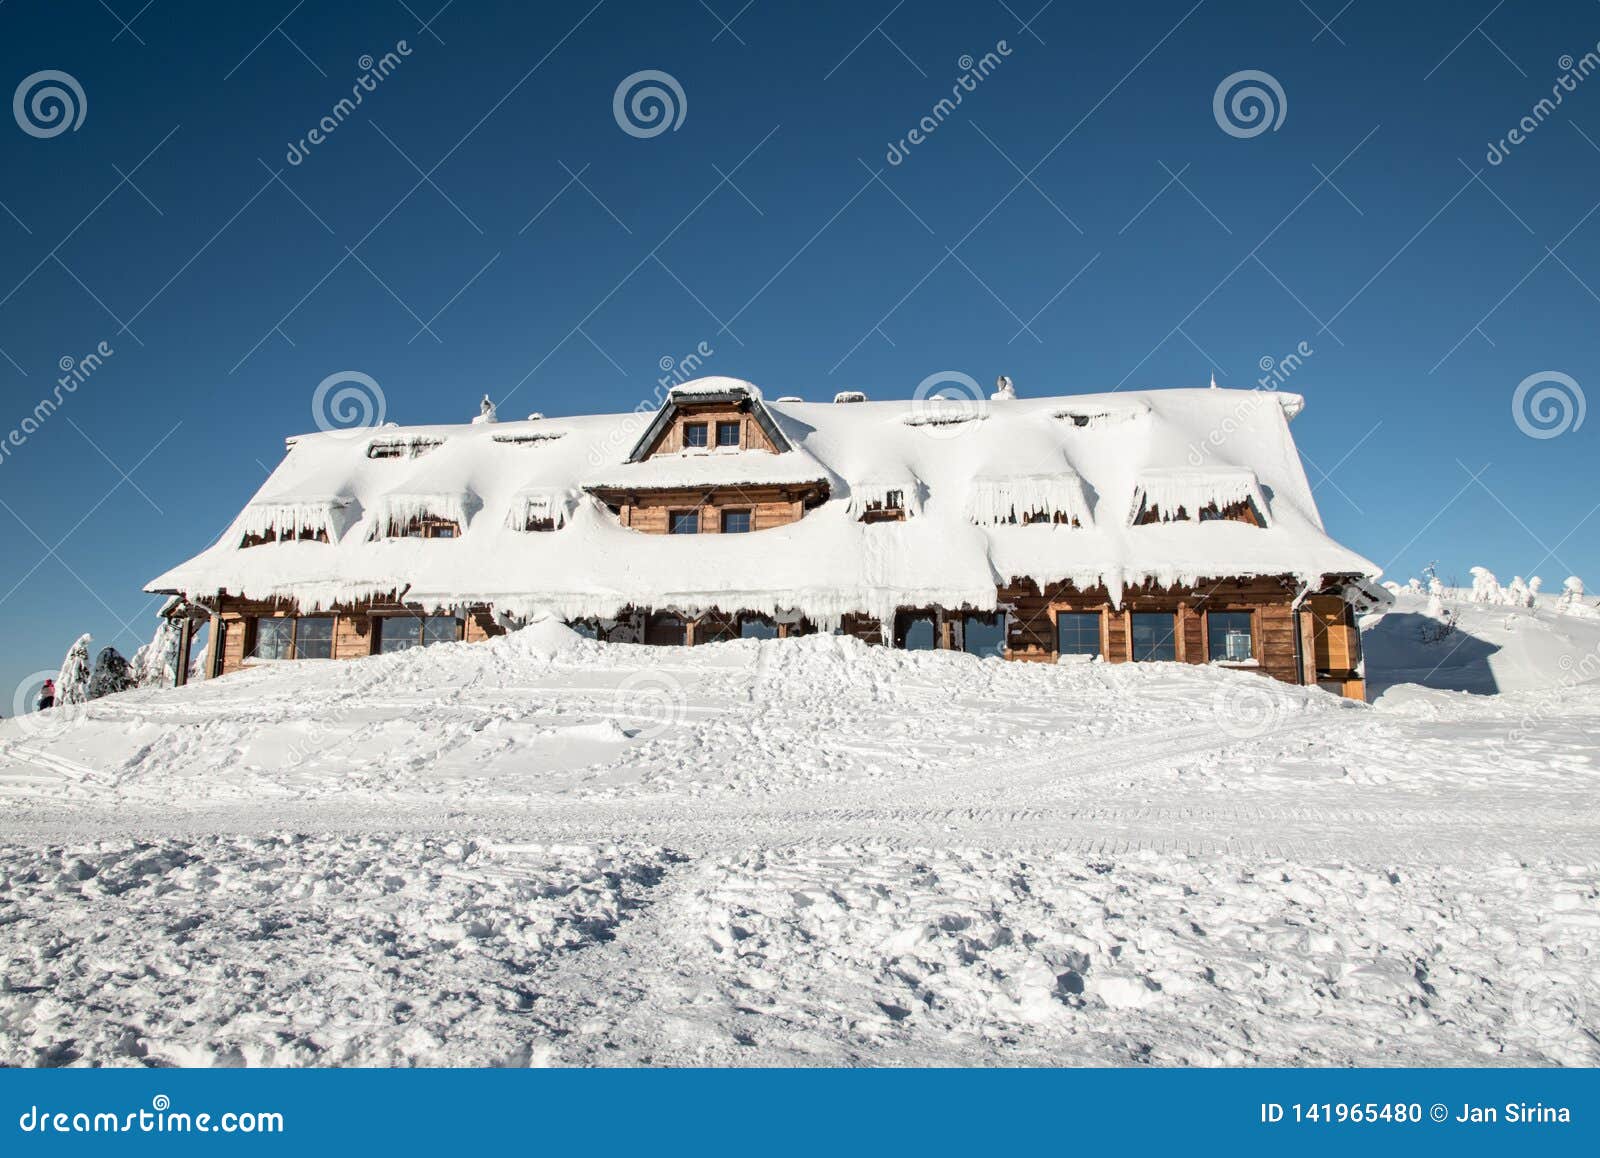 chata maraton hut on lysa hora hill in winter moravskoslezske beskydy mountains in czech republic